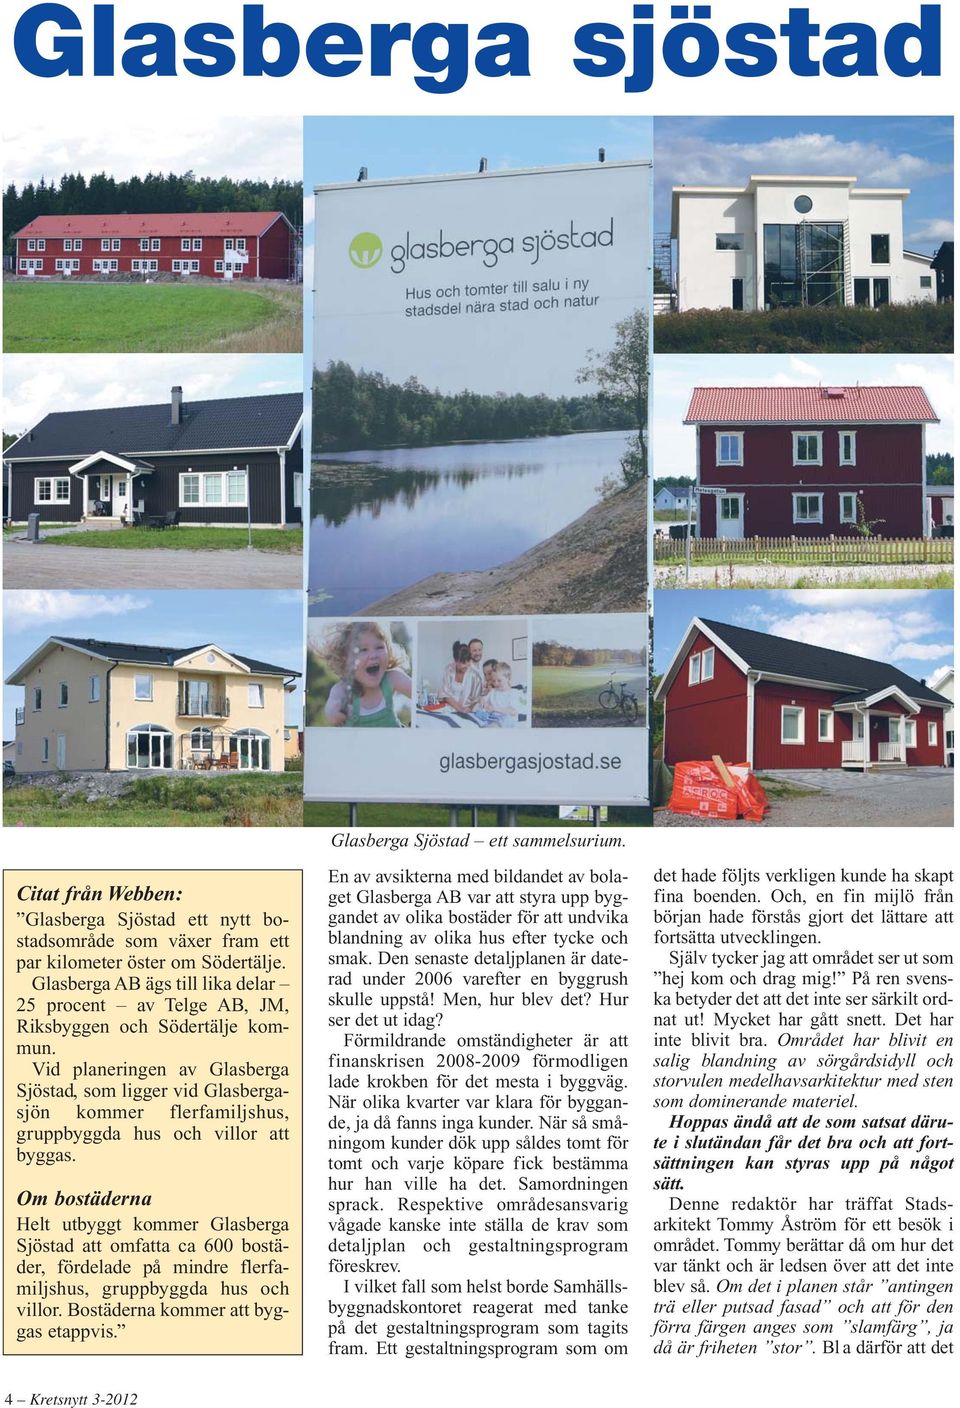 Vid planeringen av Glasberga Sjöstad, som ligger vid Glas berga - sjön kommer flerfamiljshus, grupp byggda hus och villor att byggas.